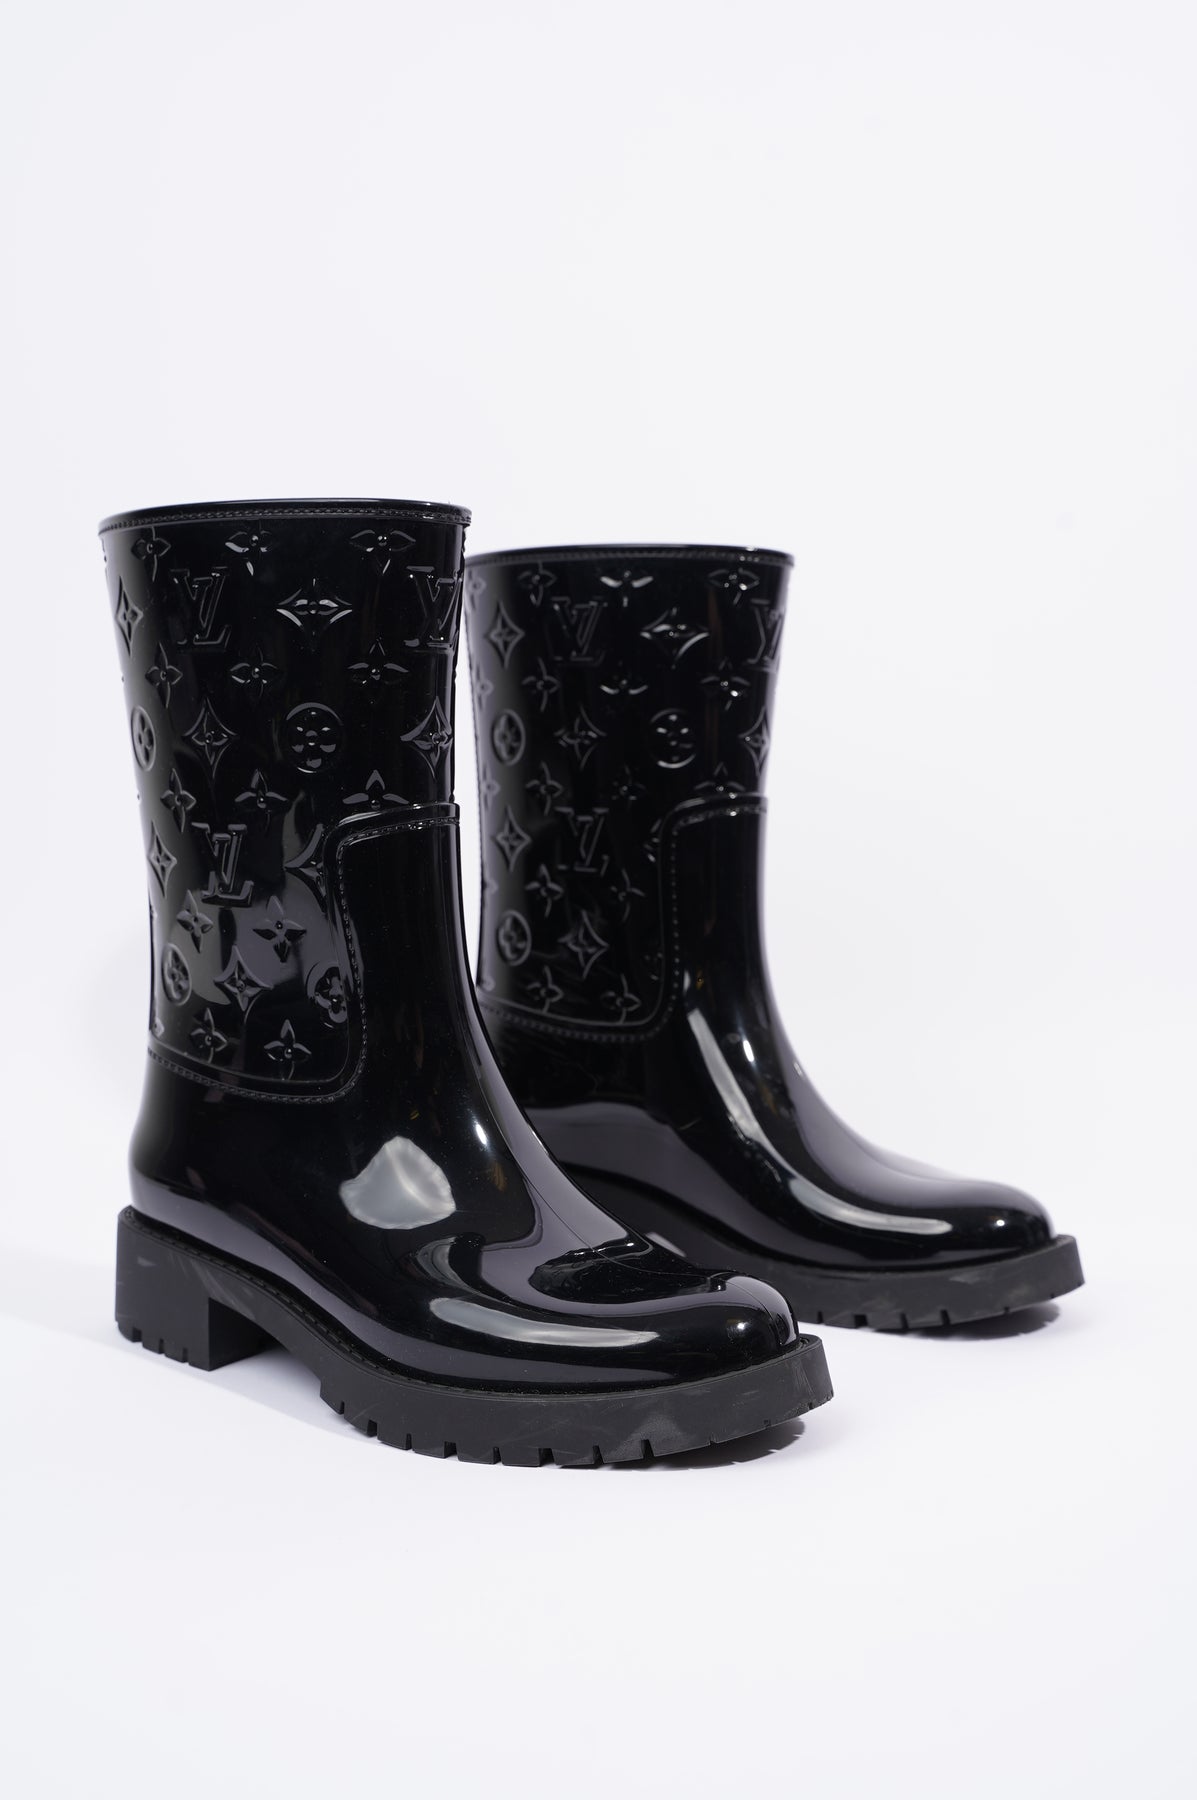 Louis Vuitton, Shoes, Louis Vuitton Drops Flat Half Boot Size 8 Usuk Size  39